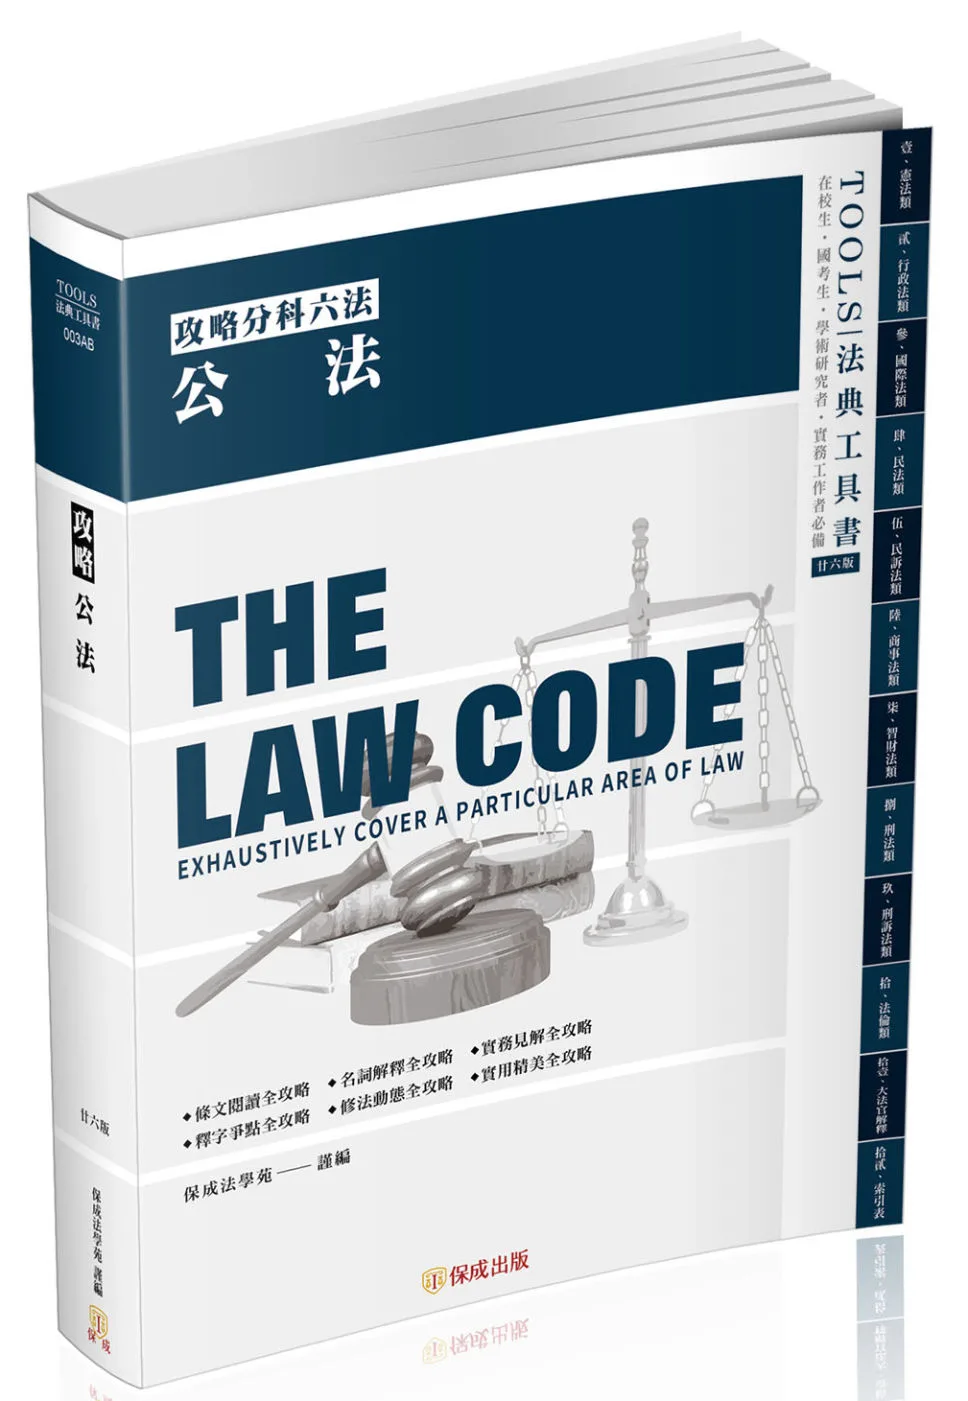 攻略公法-26版-2022法律法典工具書(保成)